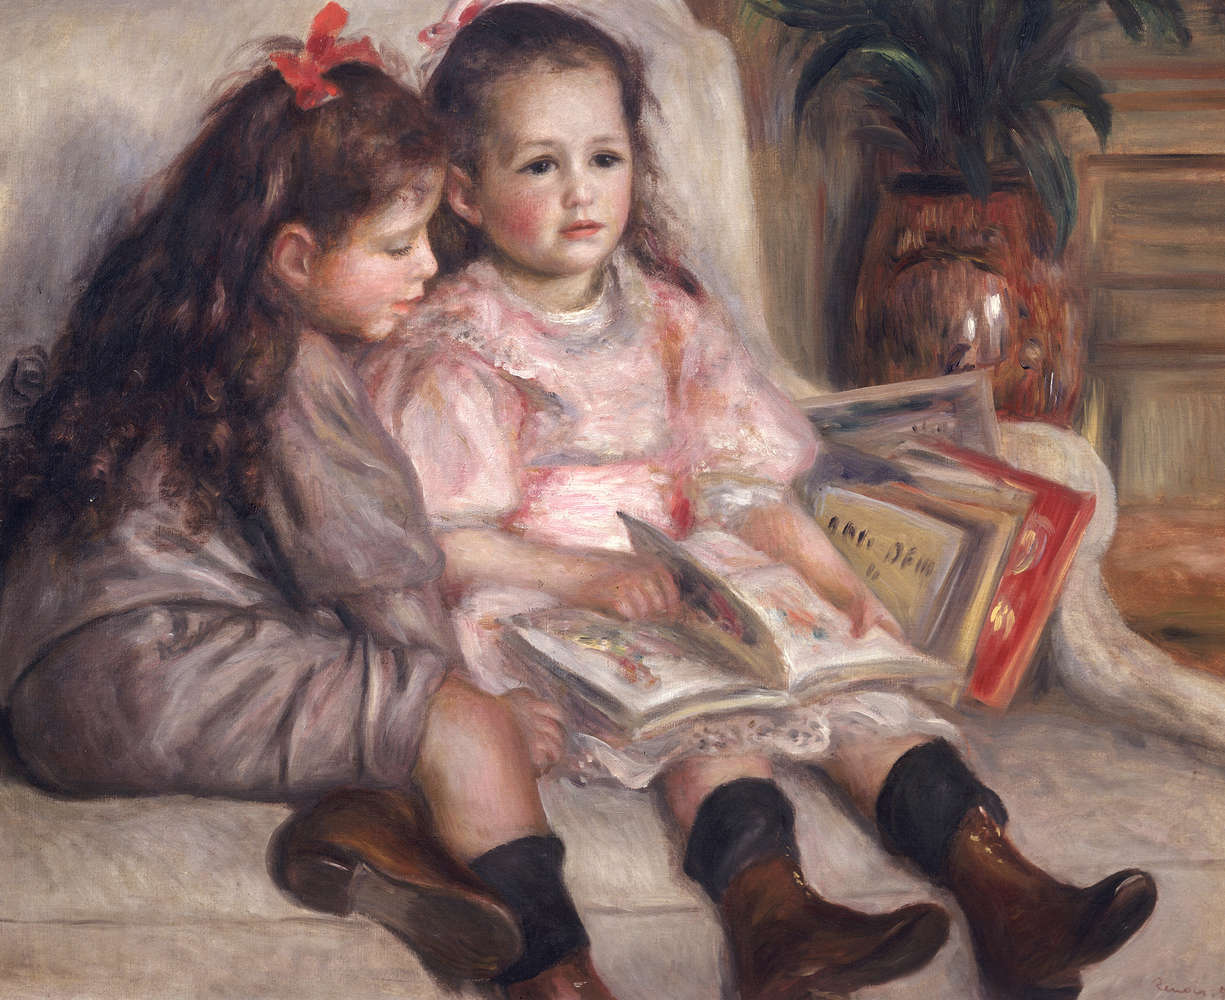             Mural de Pierre Auguste Renoir "Retratos de niños"
        